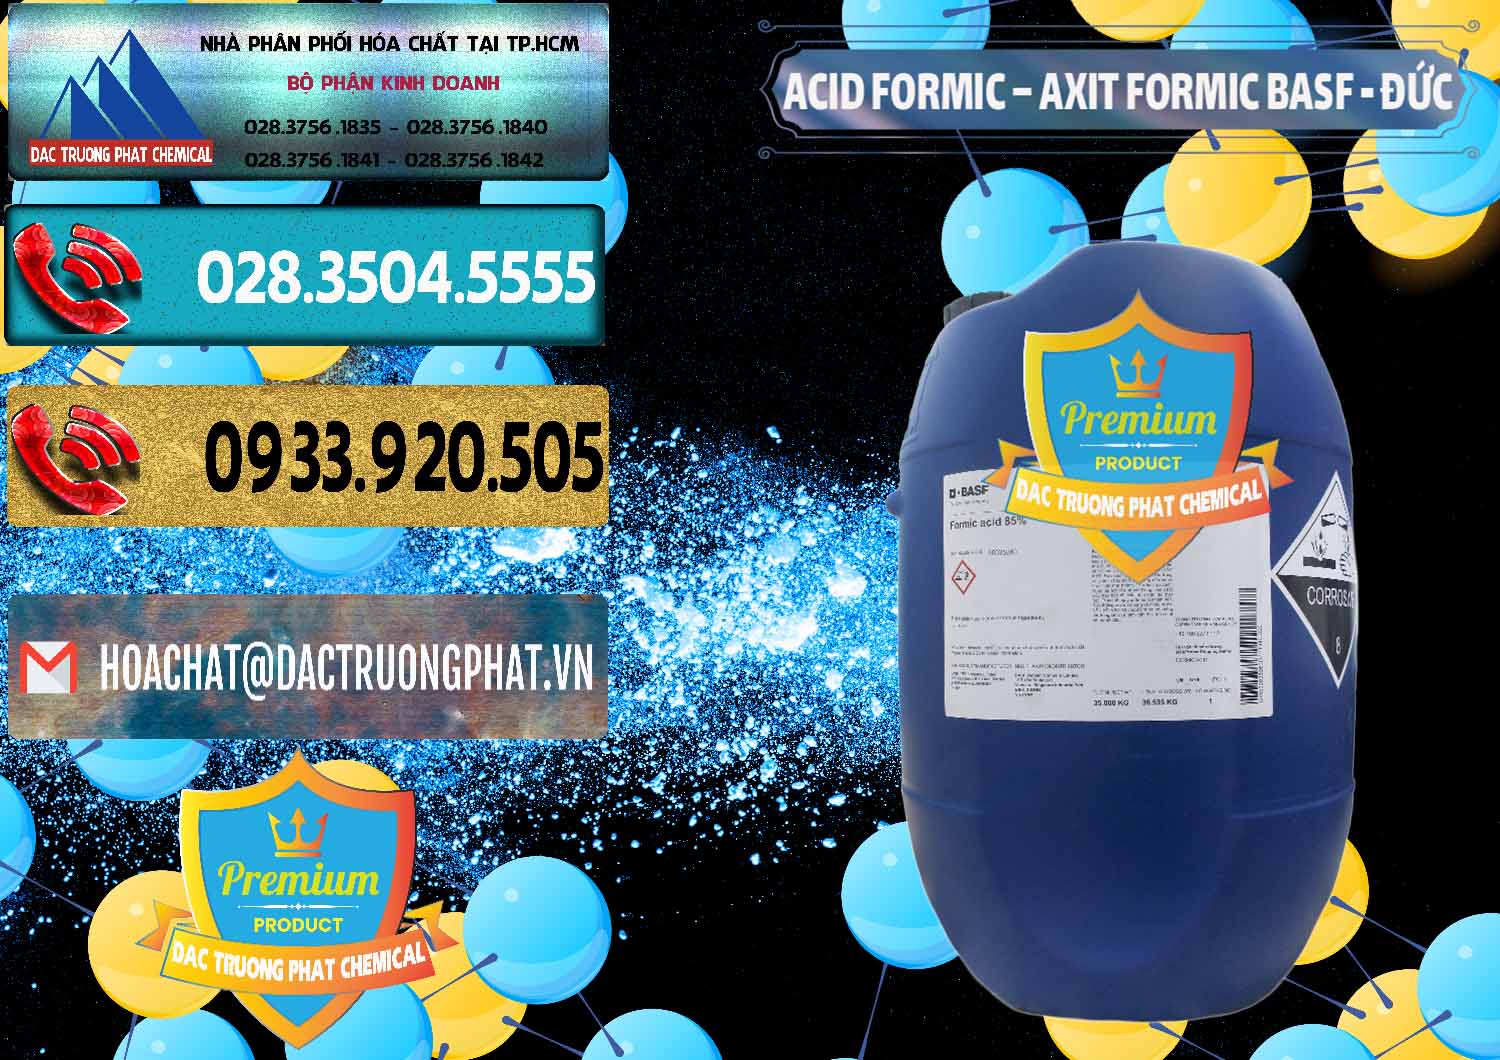 Nơi cung ứng & bán Acid Formic - Axit Formic BASF Đức Germany - 0028 - Chuyên bán _ phân phối hóa chất tại TP.HCM - hoachatdetnhuom.com